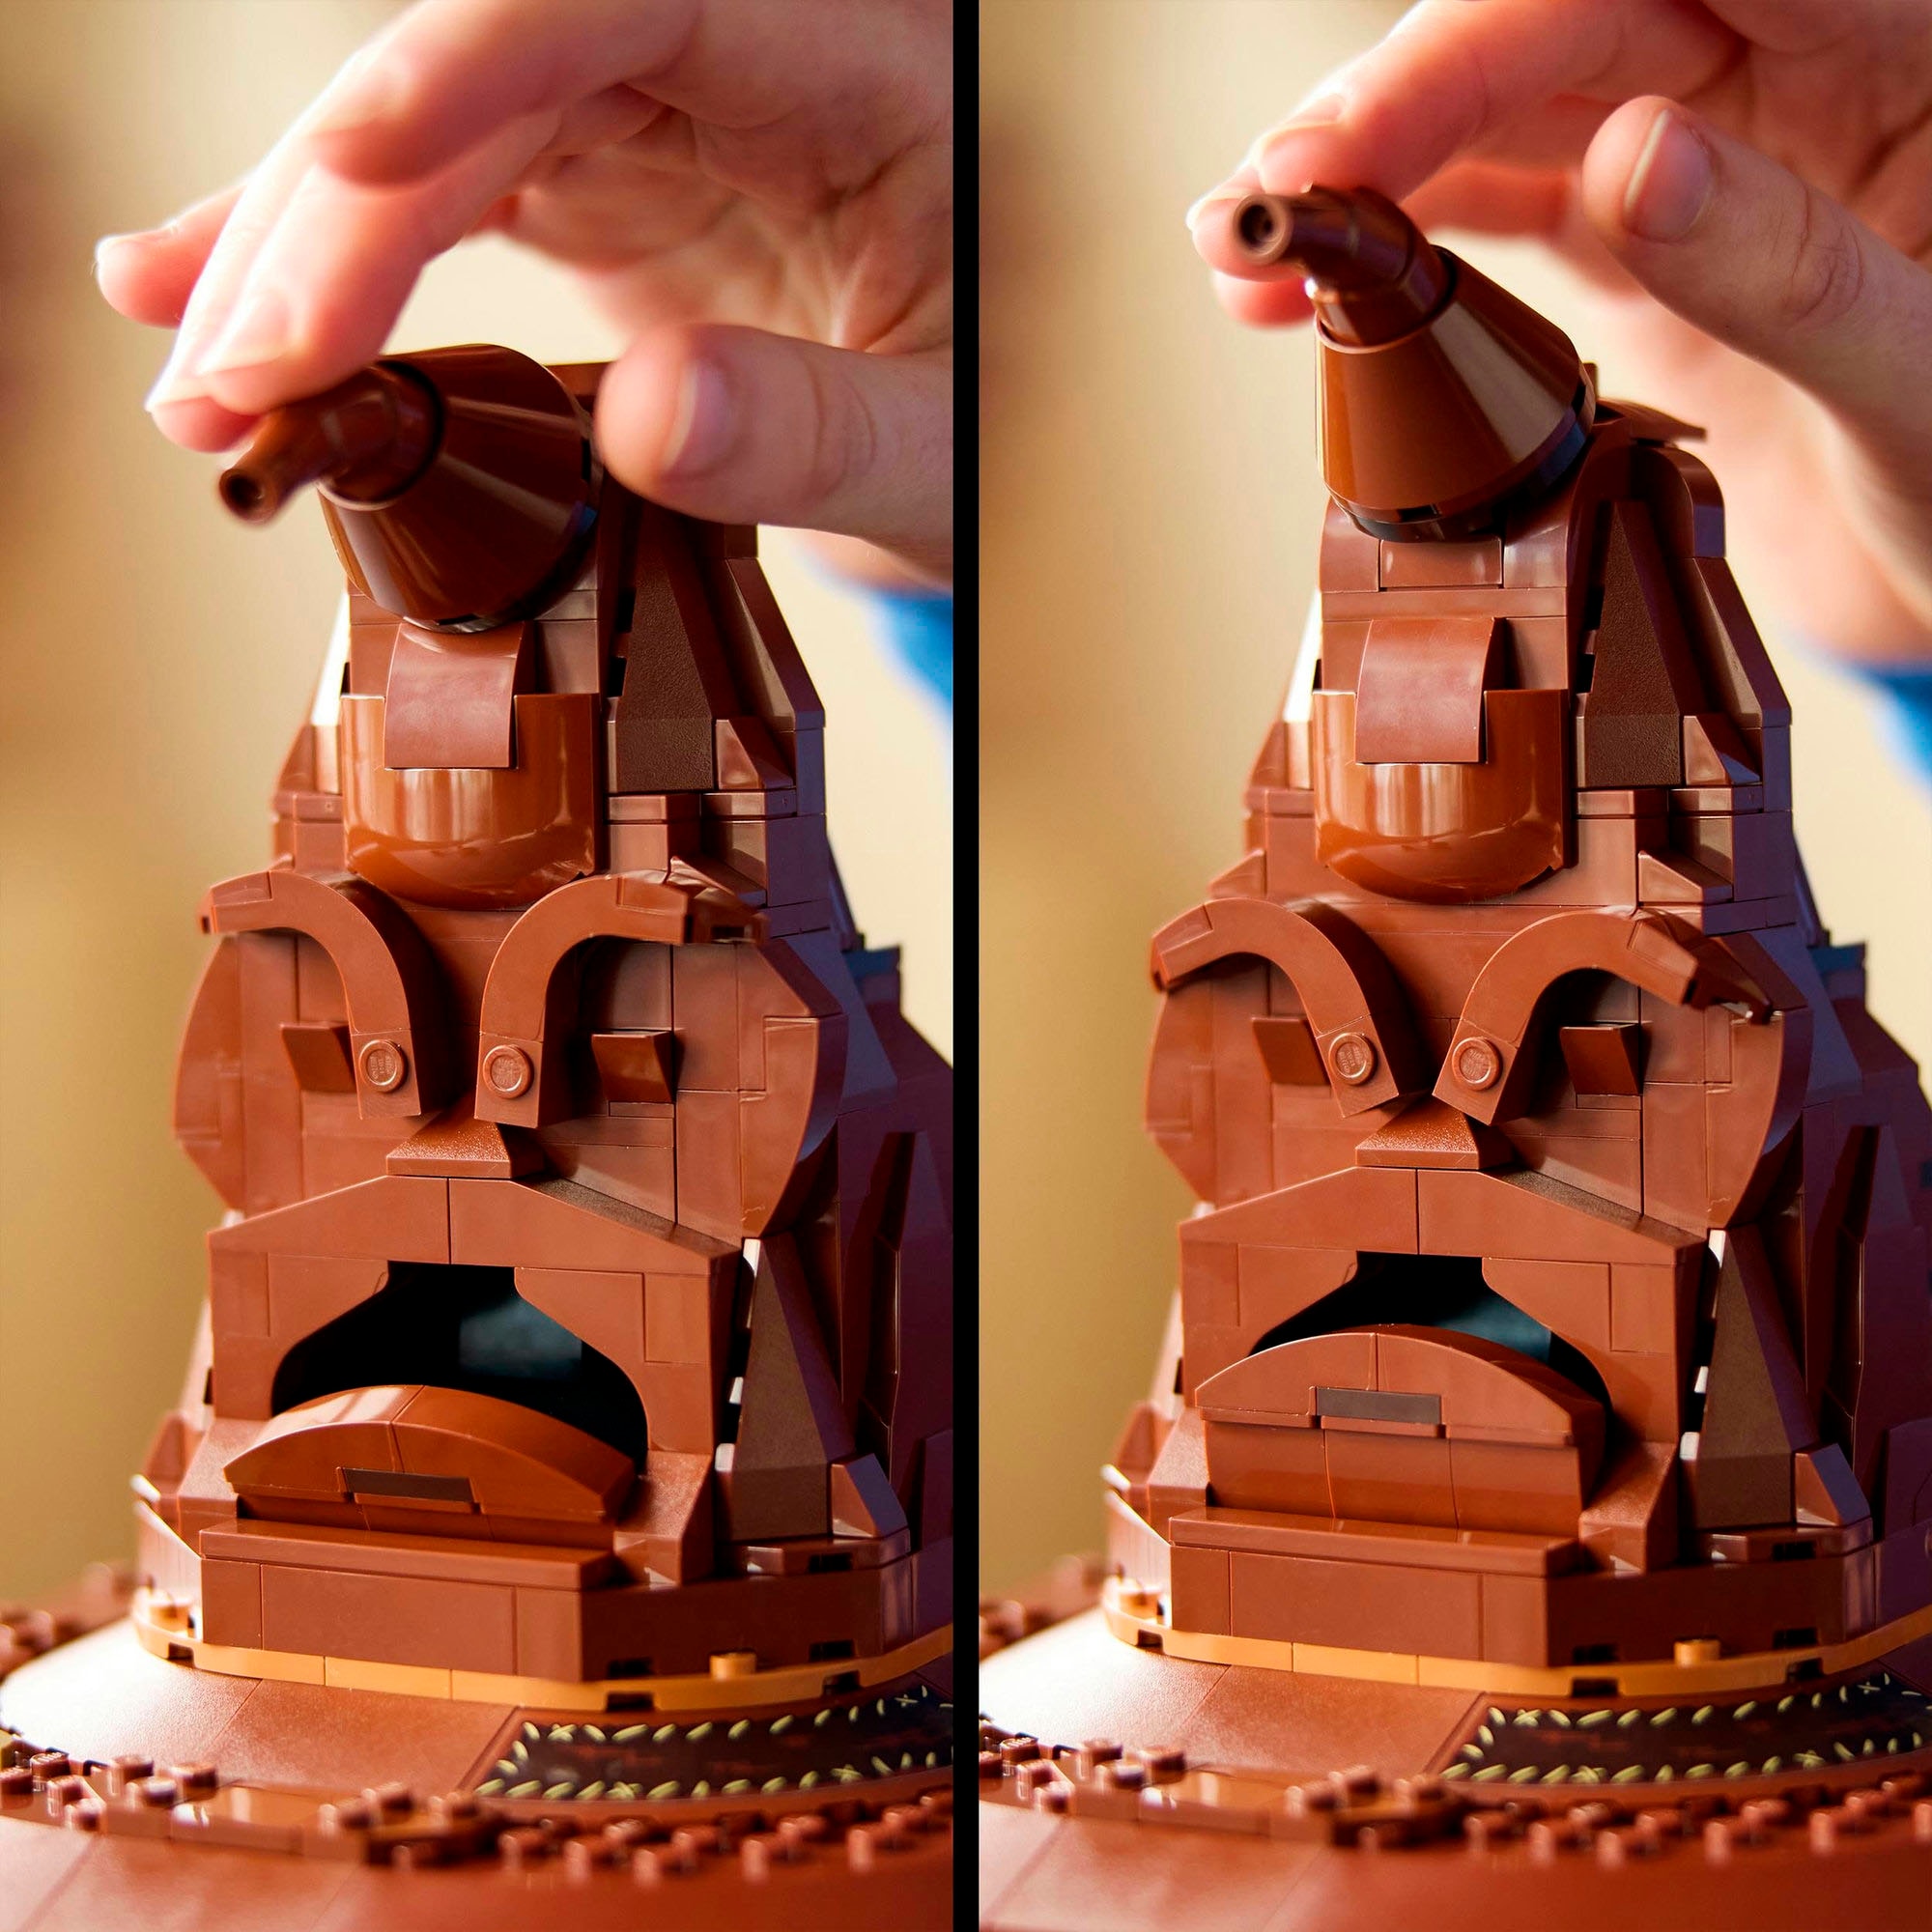 LEGO® Konstruktionsspielsteine »Der Sprechende Hut (76429), LEGO® Harry Potter™«, (561 St.), Made in Europe